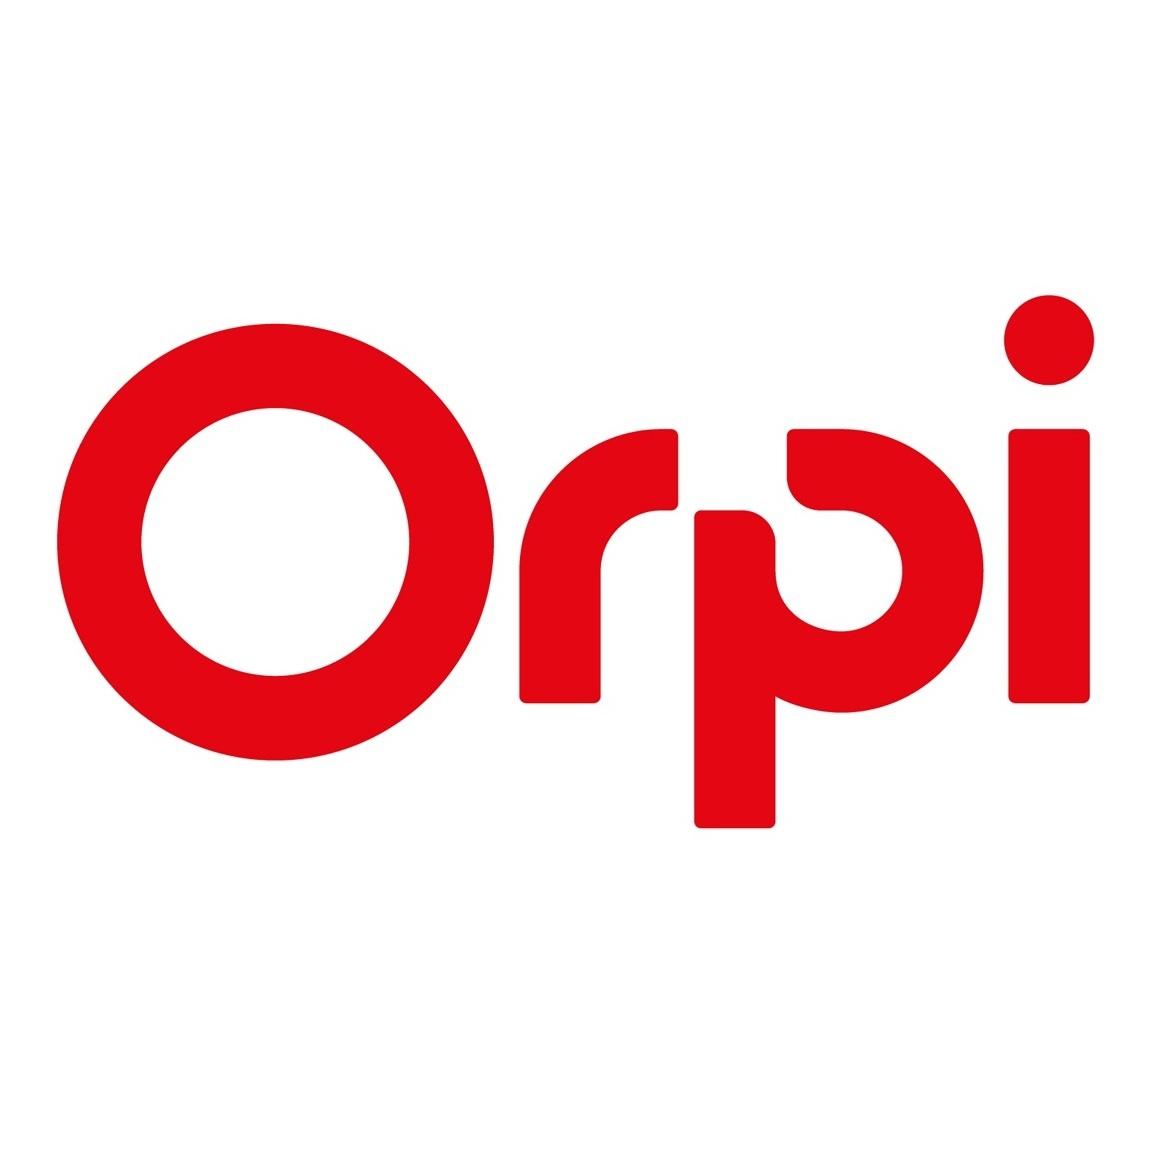 Orpi Agence La Lauze Mende Mende